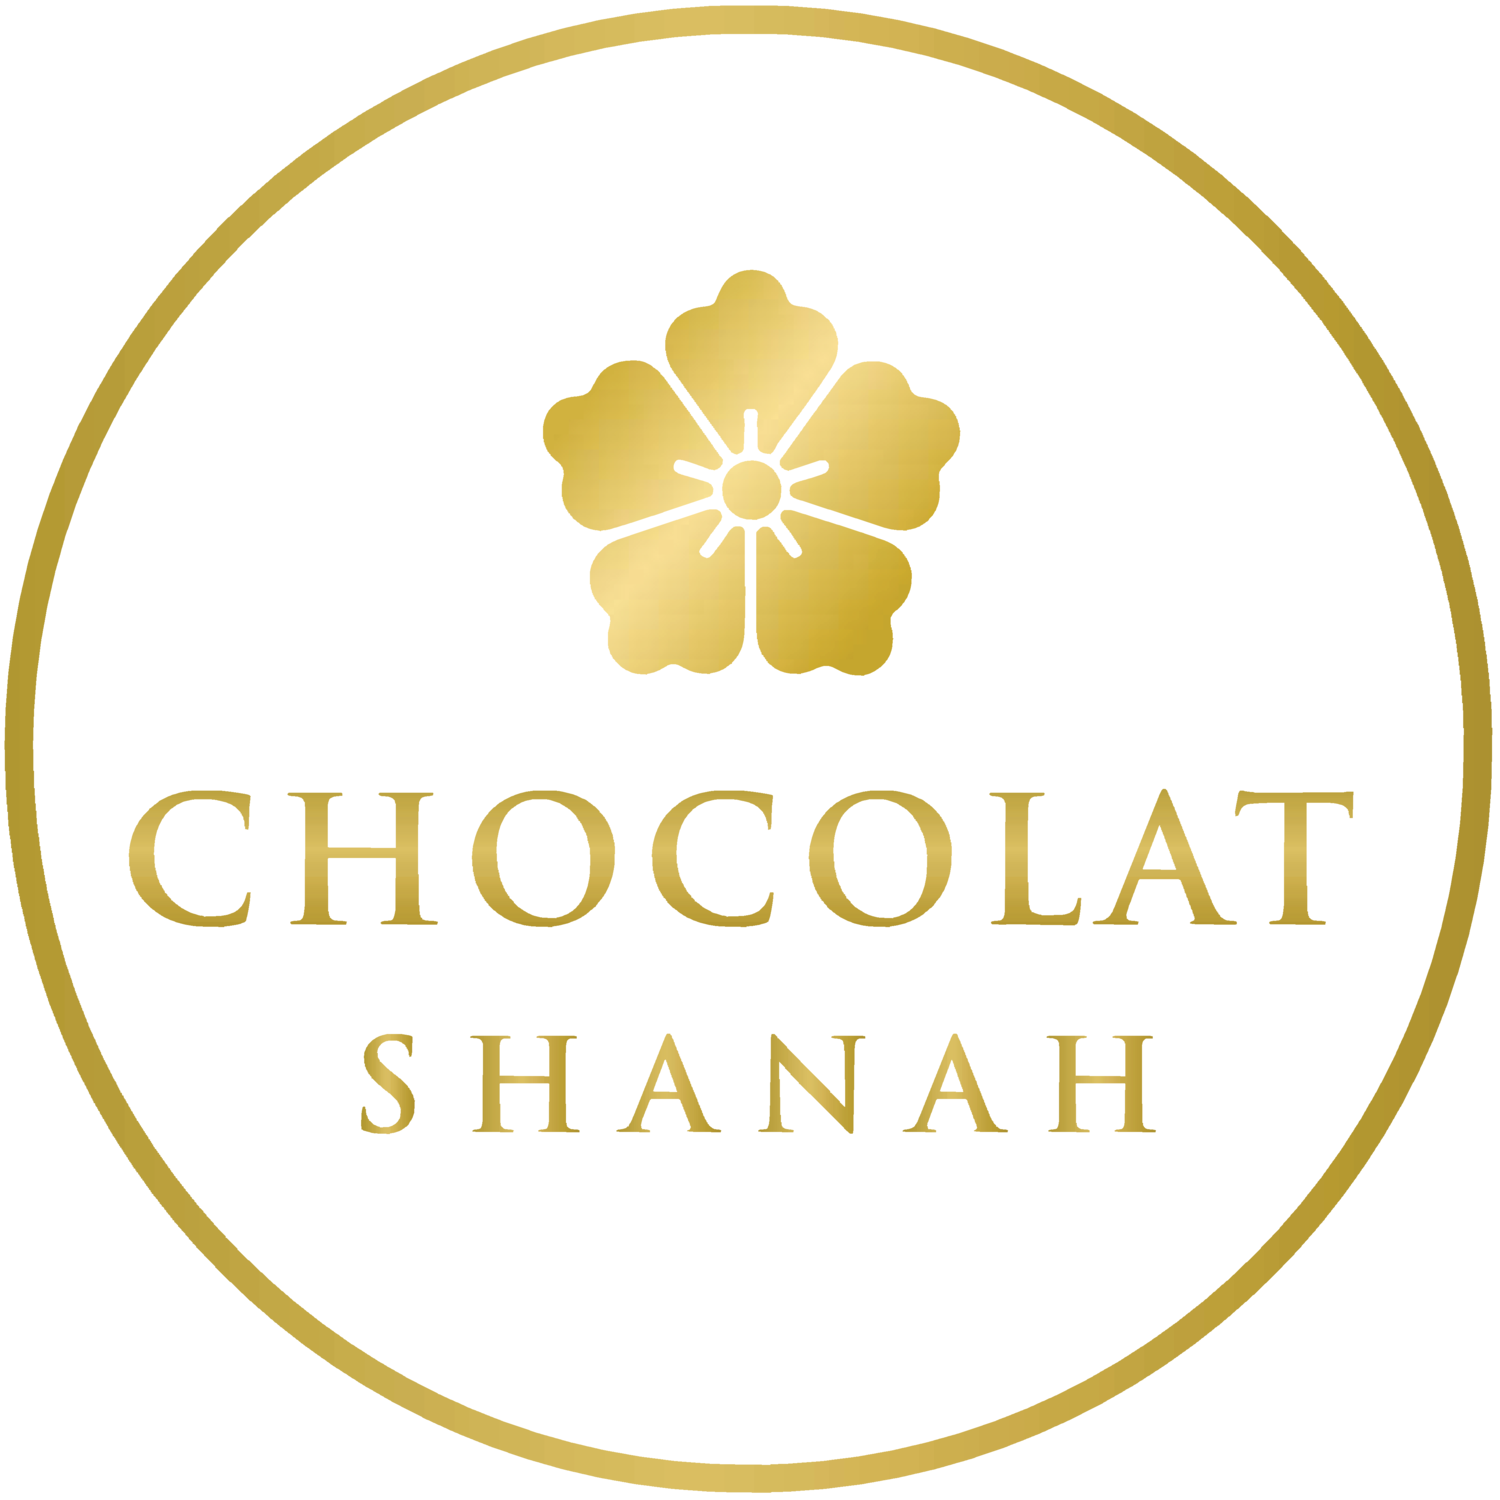 Chocolat Shanah